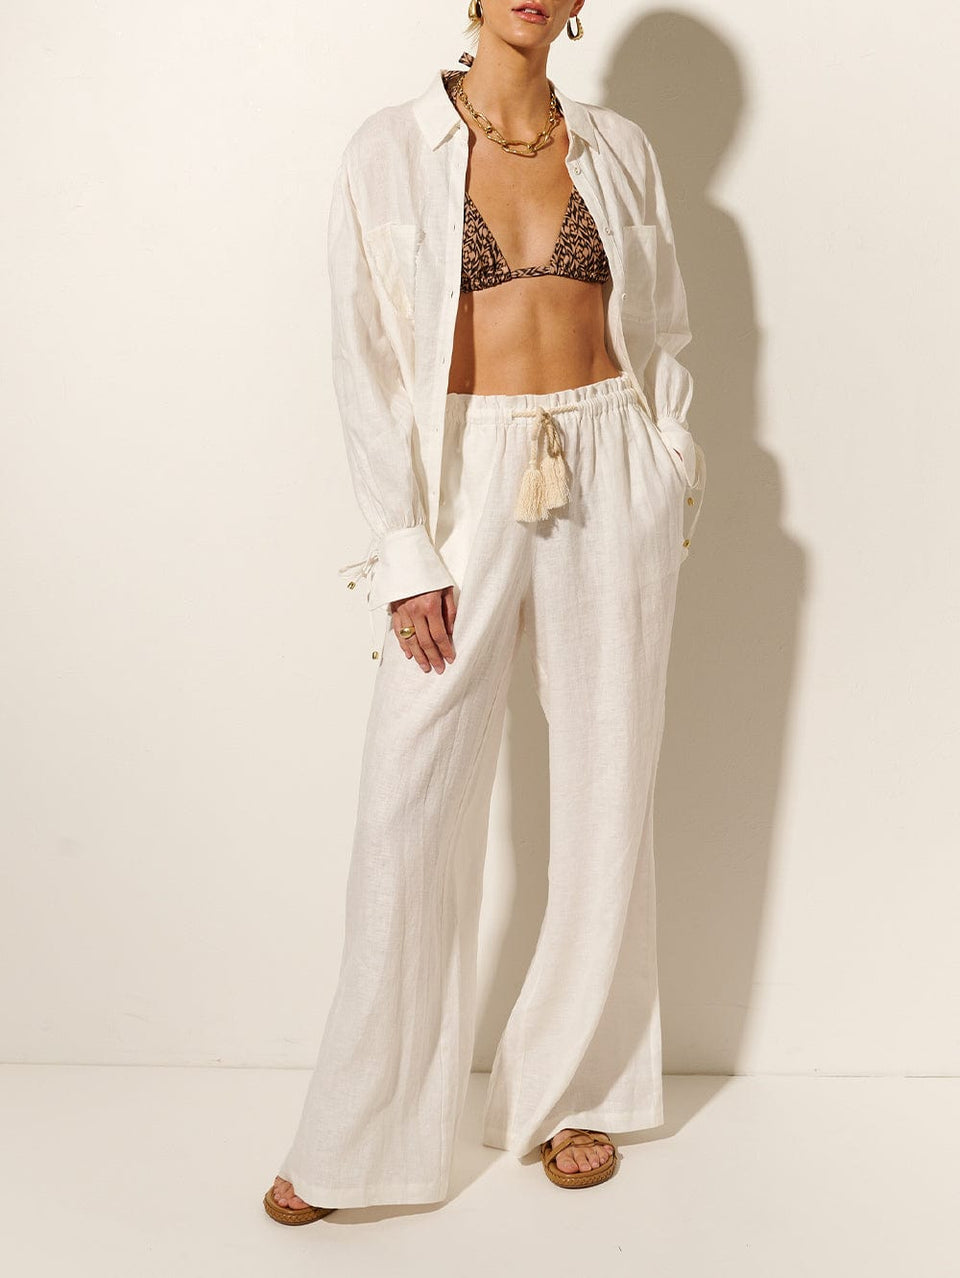 Jacana Pant KIVARI | Model wears ivory linen pant